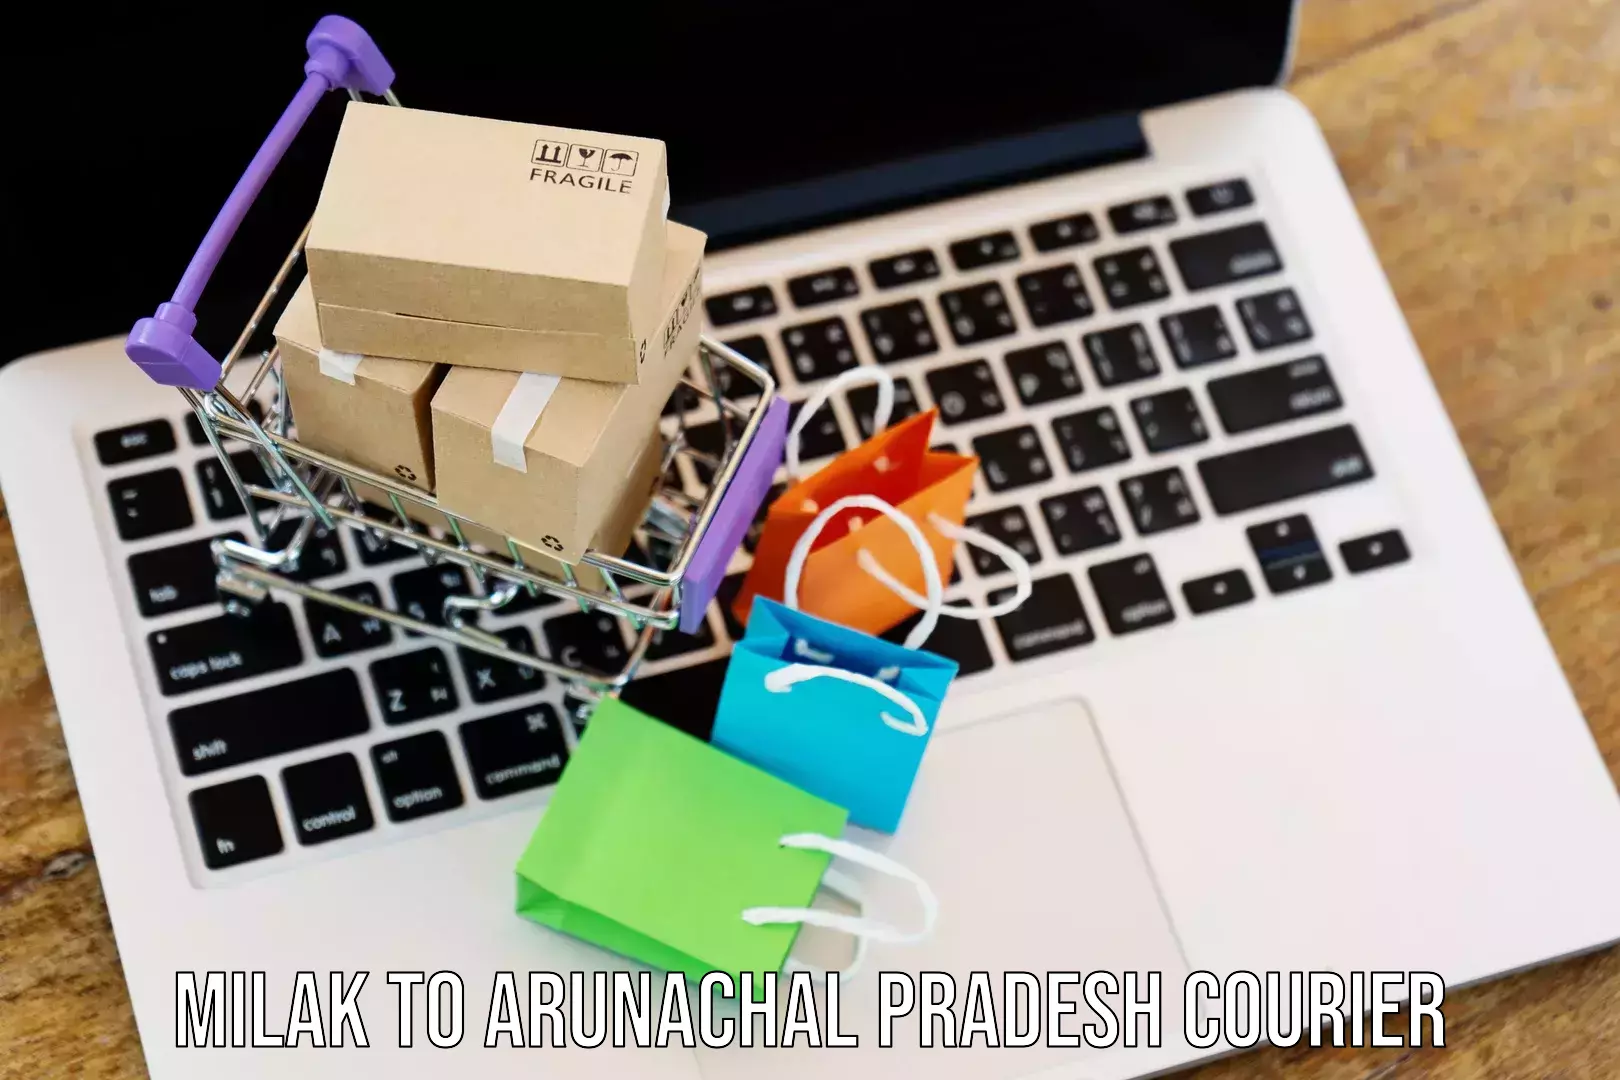 International courier networks Milak to Arunachal Pradesh